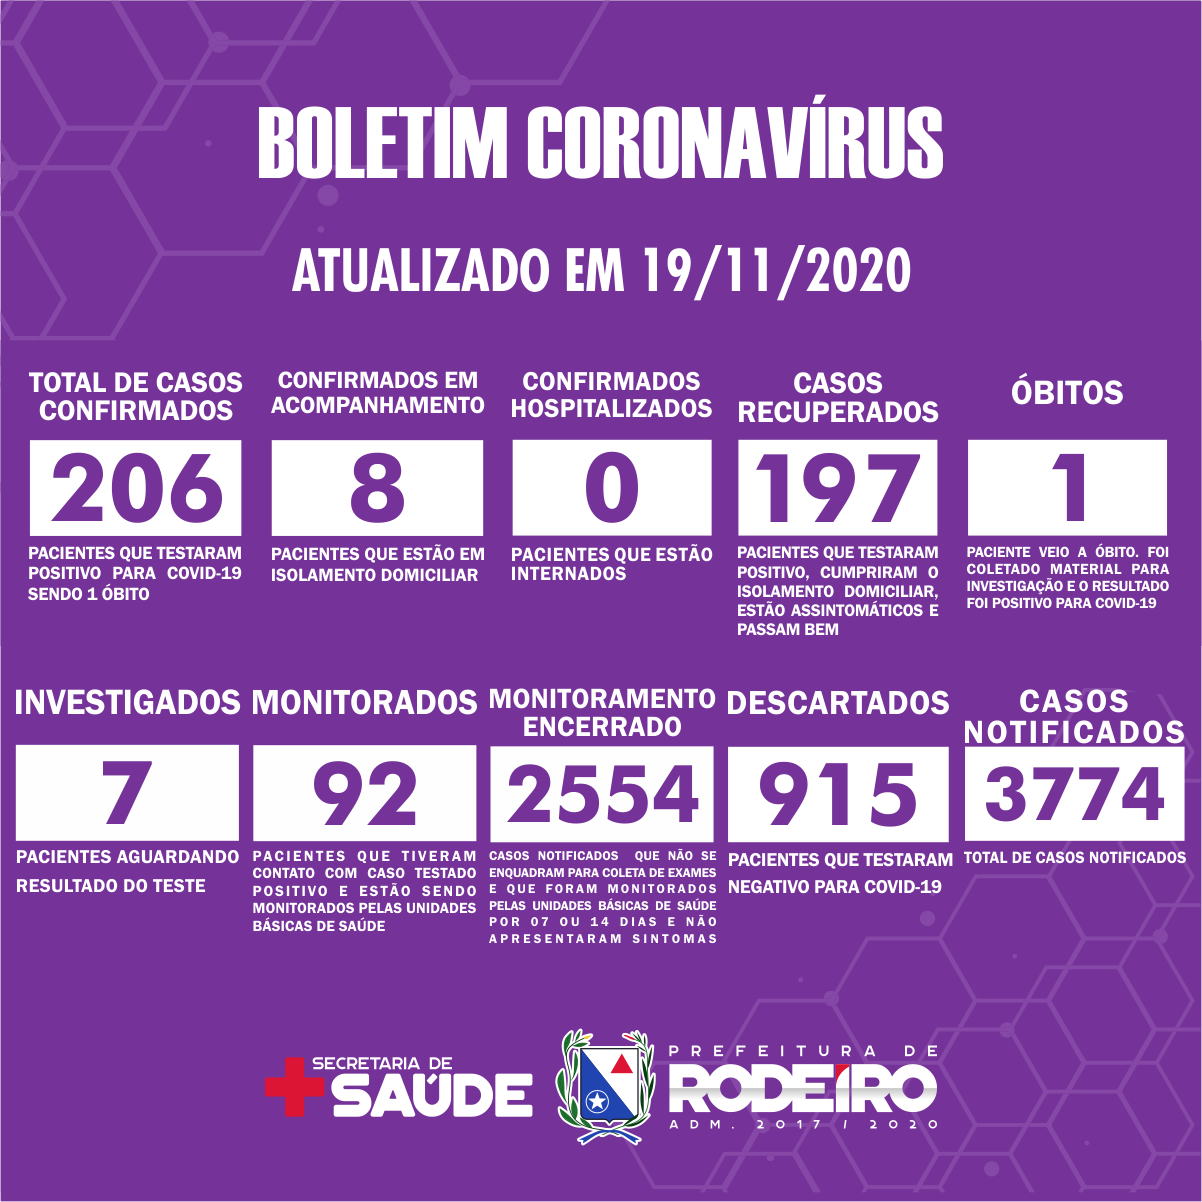 Boletim Epidemiológico do Município de Rodeiro sobre coronavírus, atualizado em 19/11/2020